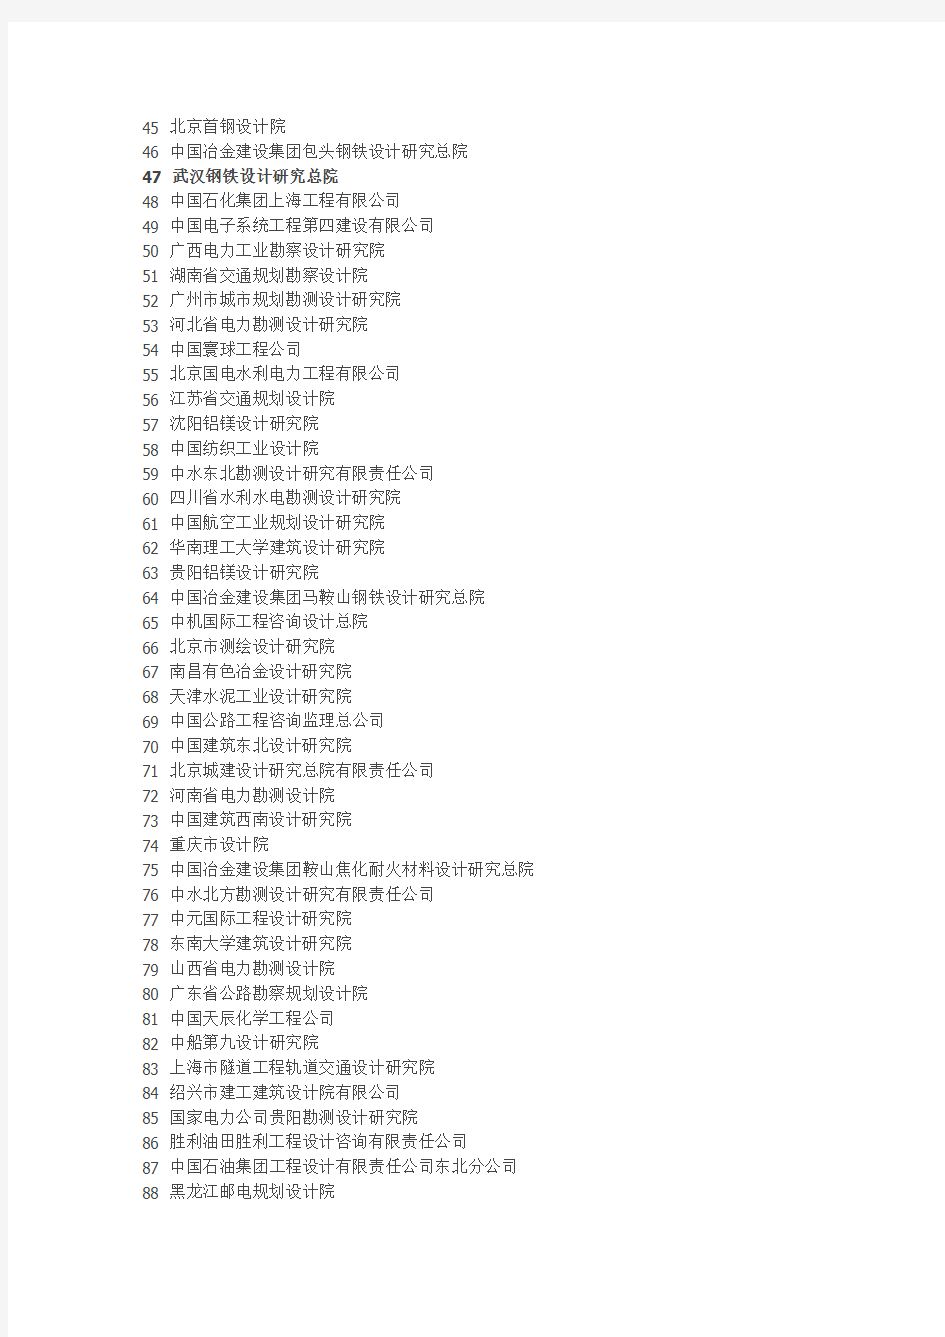 中国建筑设计院详细名单.